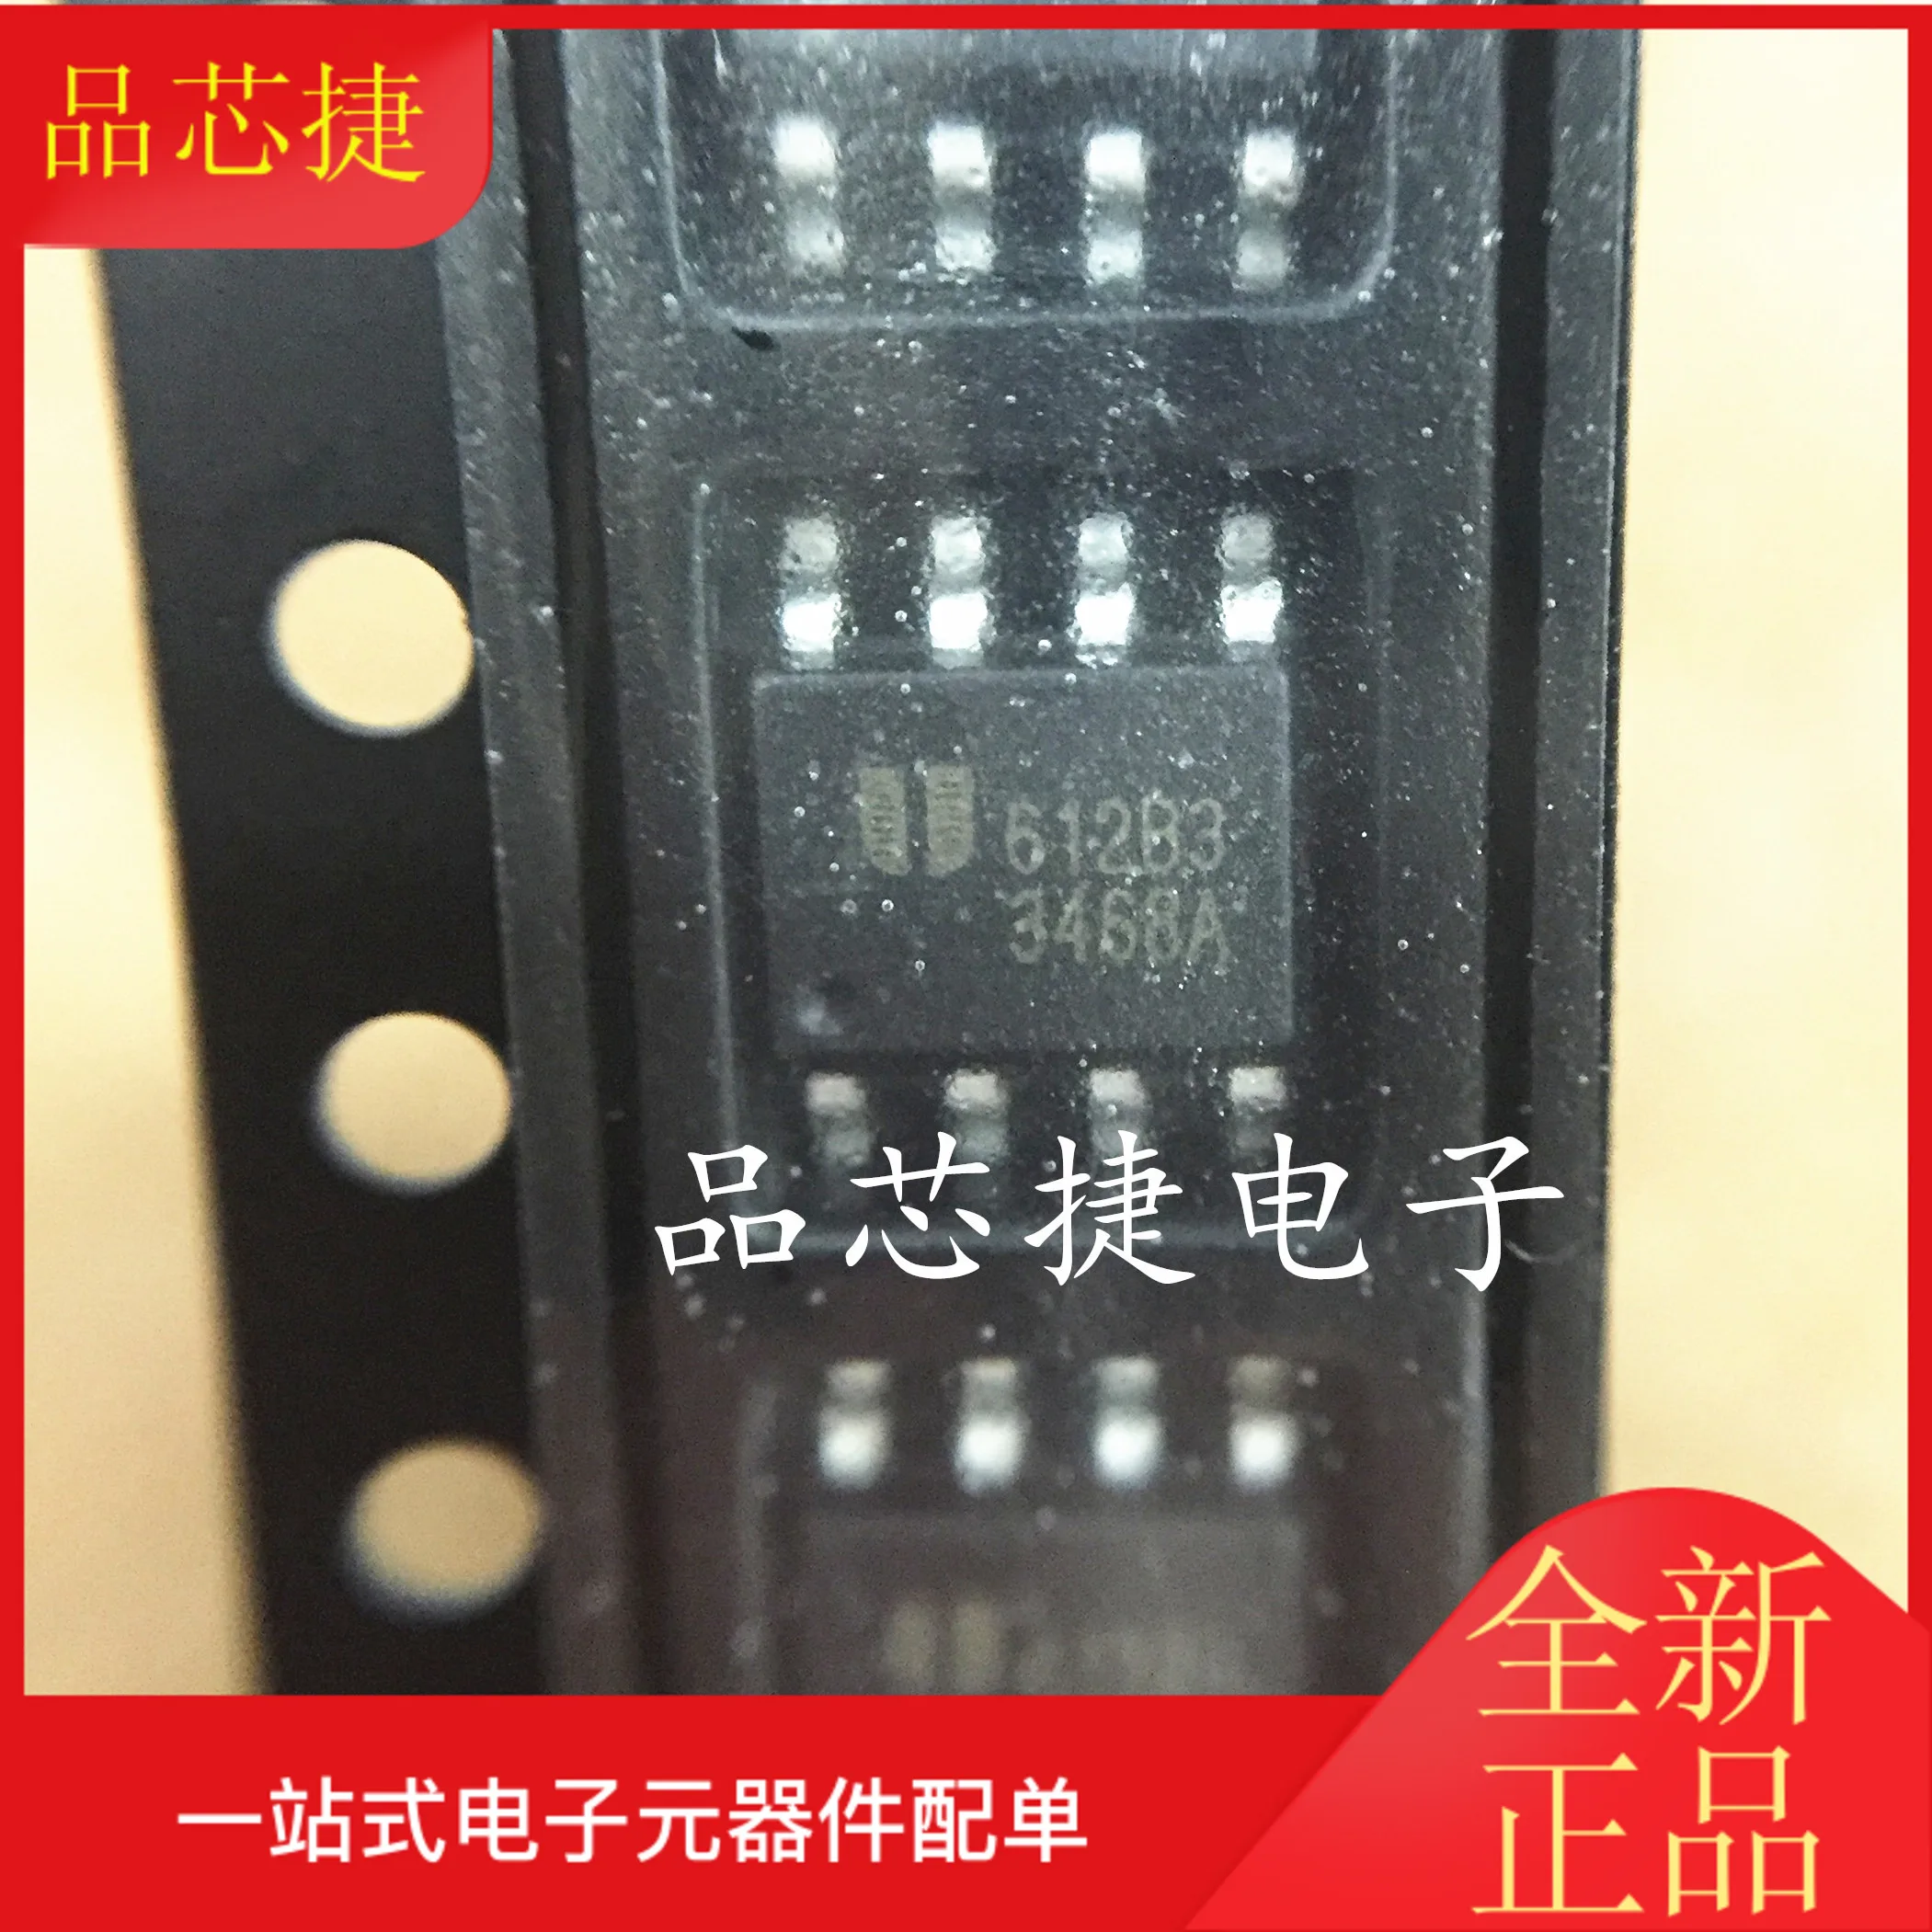 

10 шт. Оригинальный Новый eup3468avir1 EUP3468 Шелковый экран 3468A SOP8 быстрая зарядка автомобильное зарядное устройство IC чип